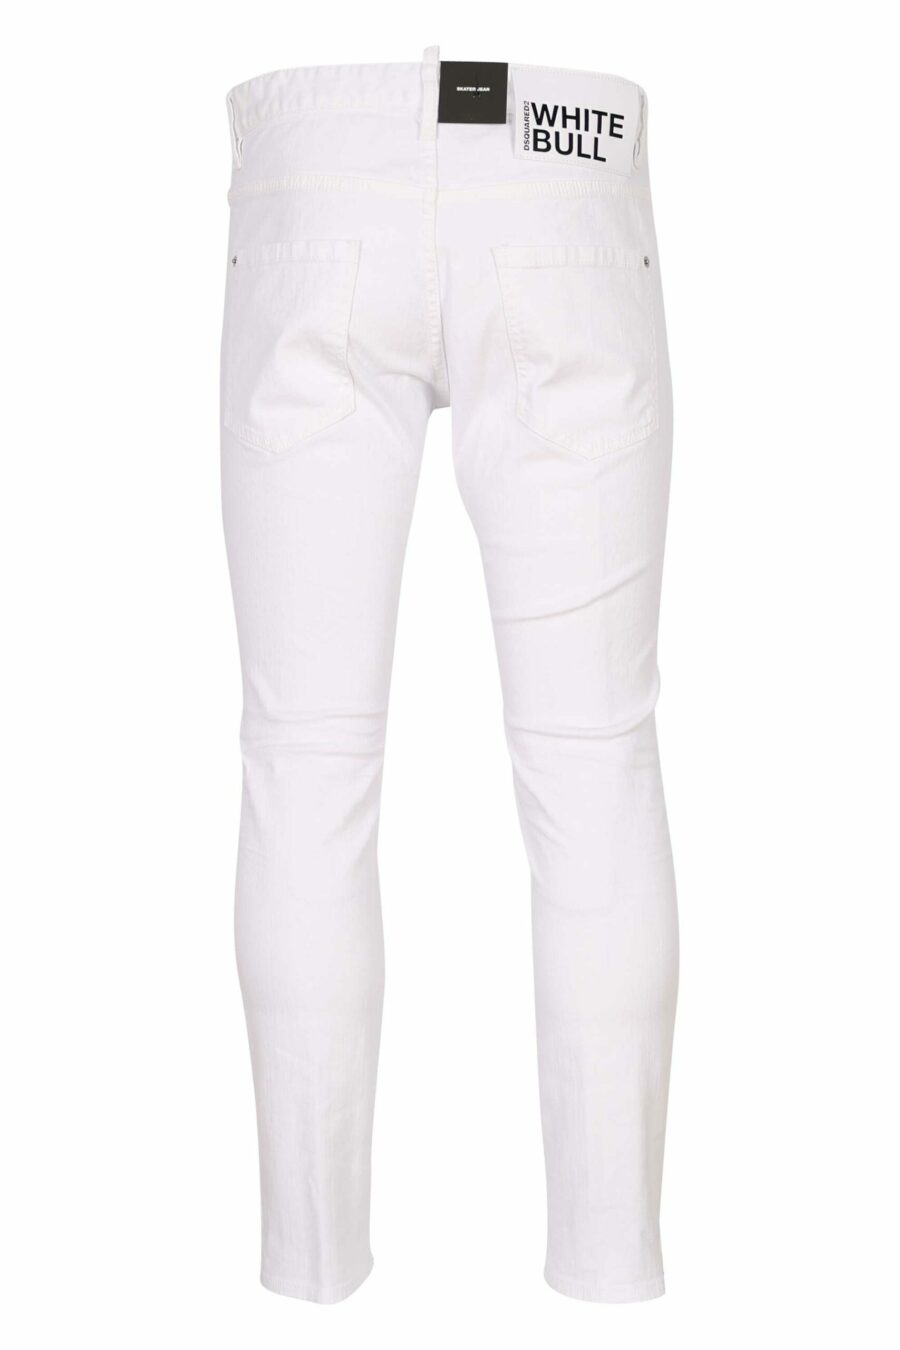 Weiße "Skater-Jeans" - 8054148534356 1 skaliert